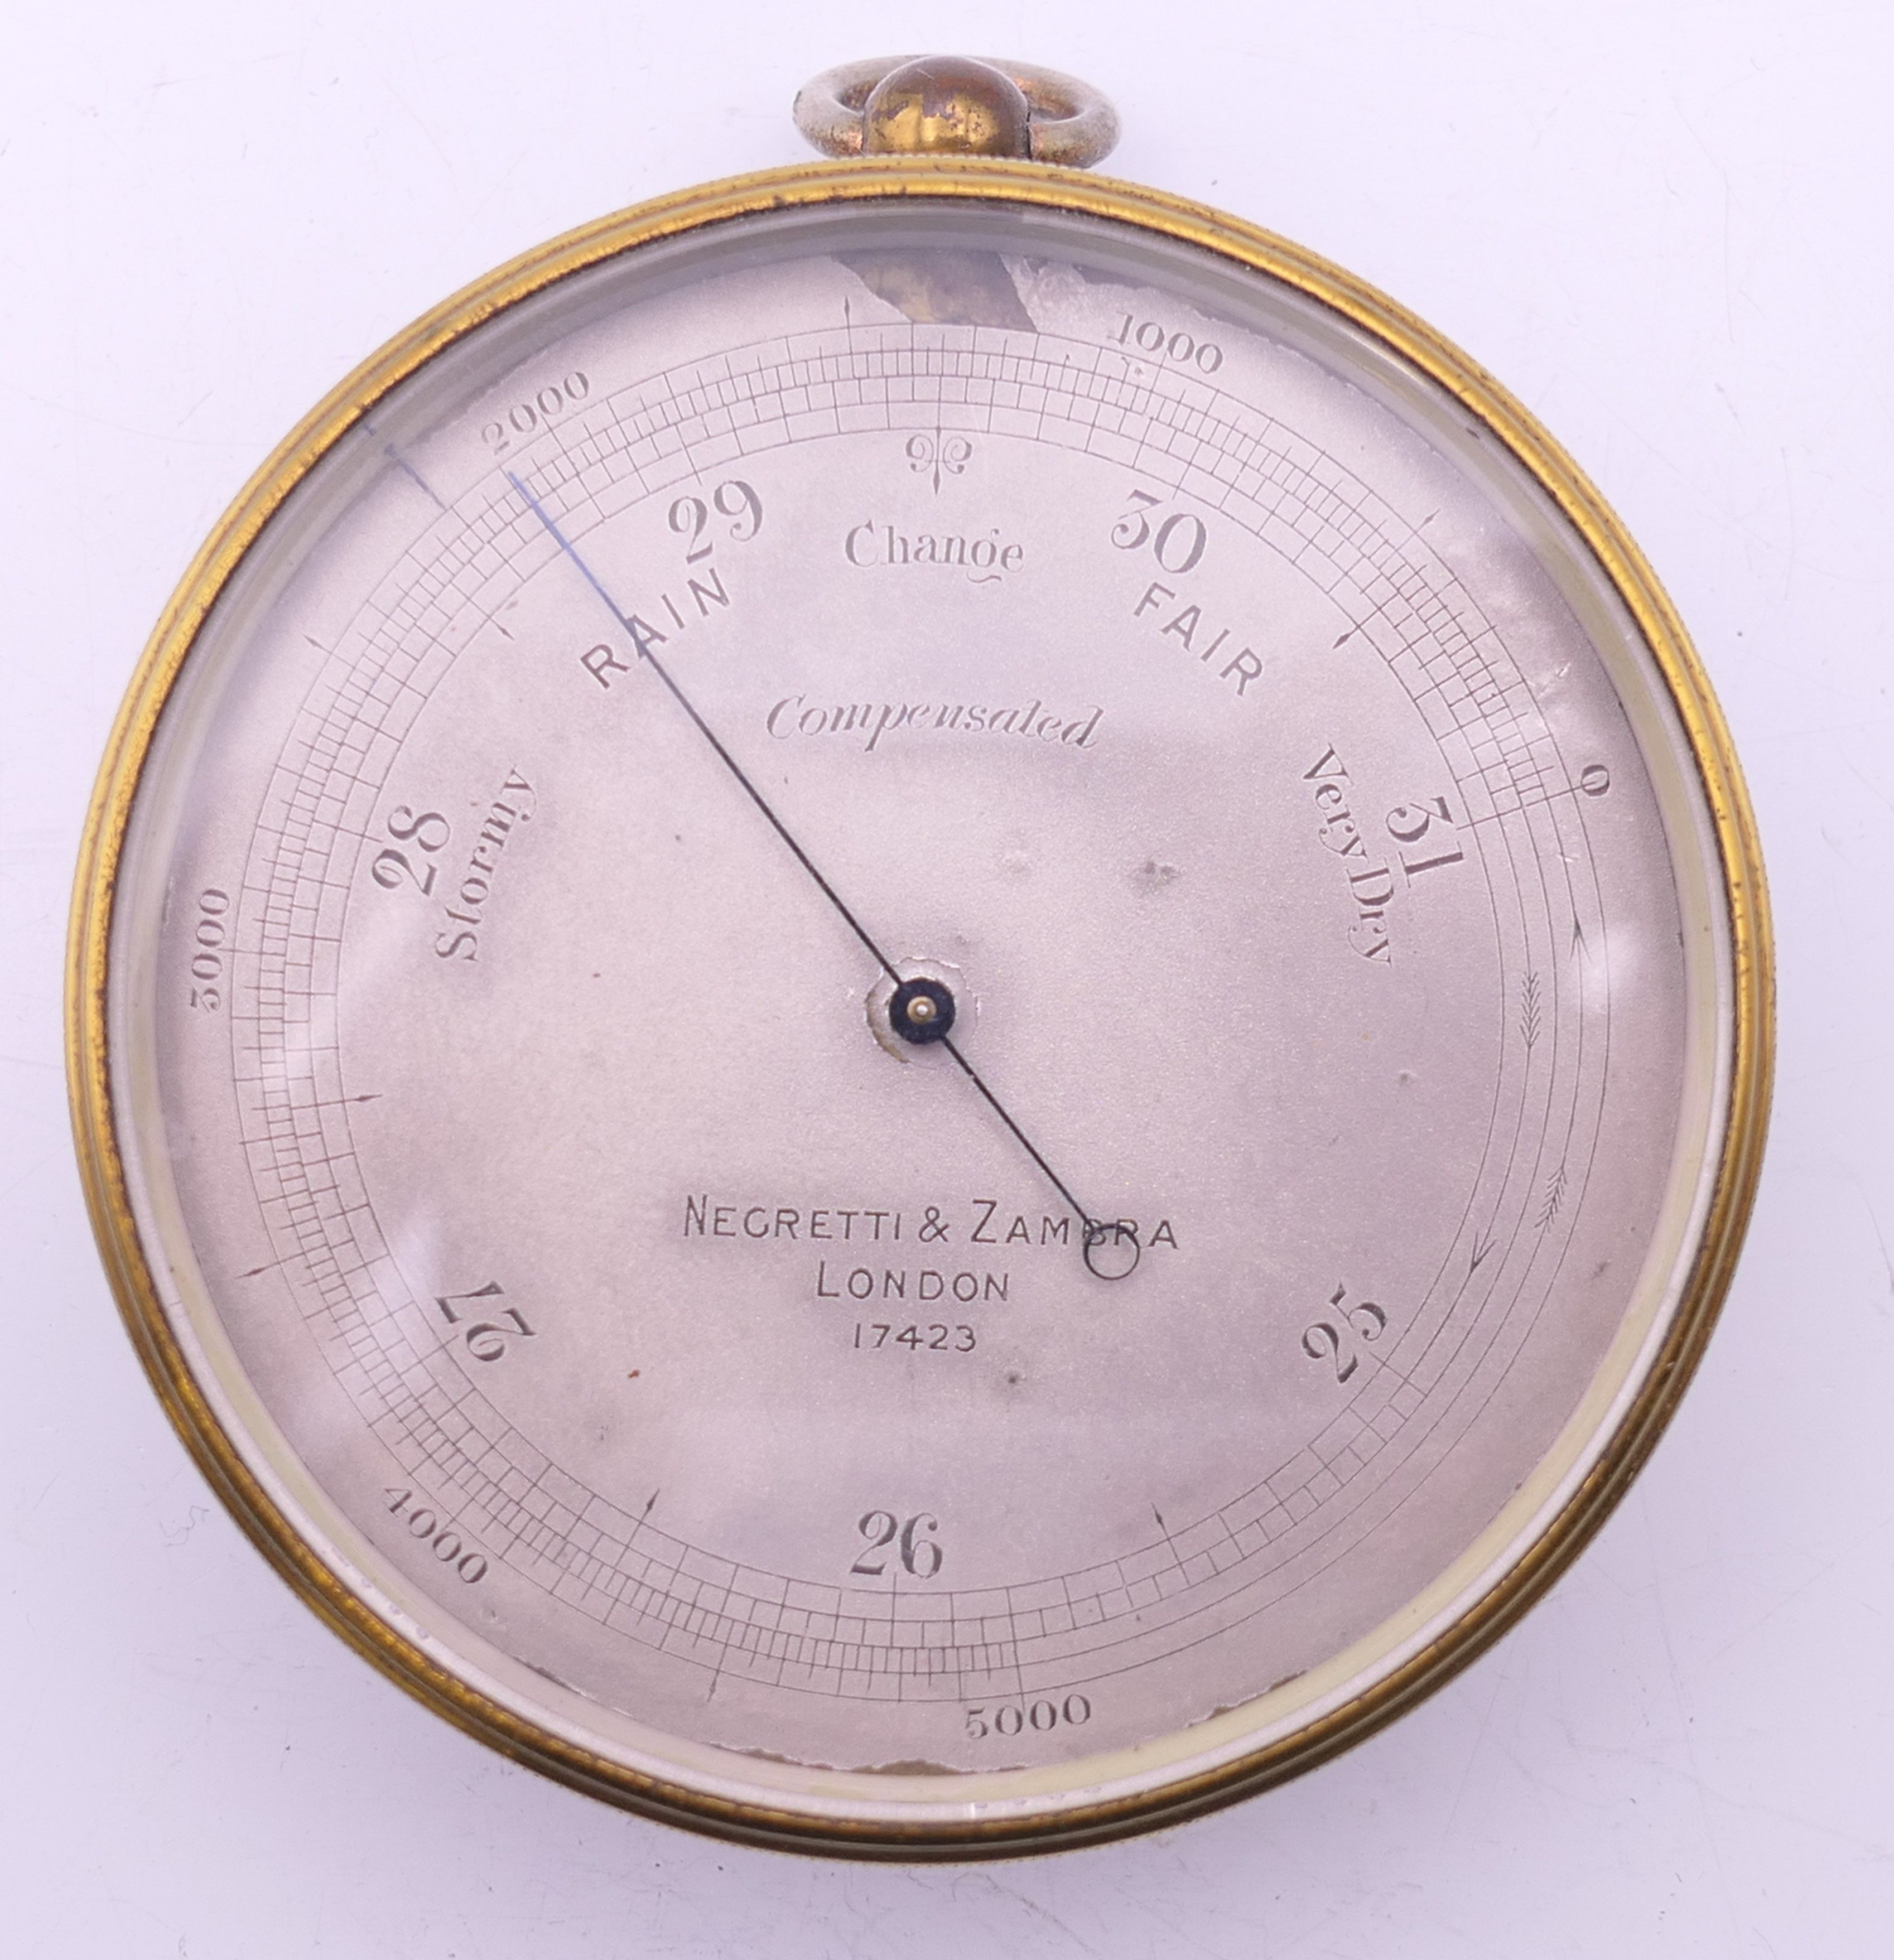 A Negretti & Zambra of London brass barometer, in original case, numbered 17423. 7 cm diameter.